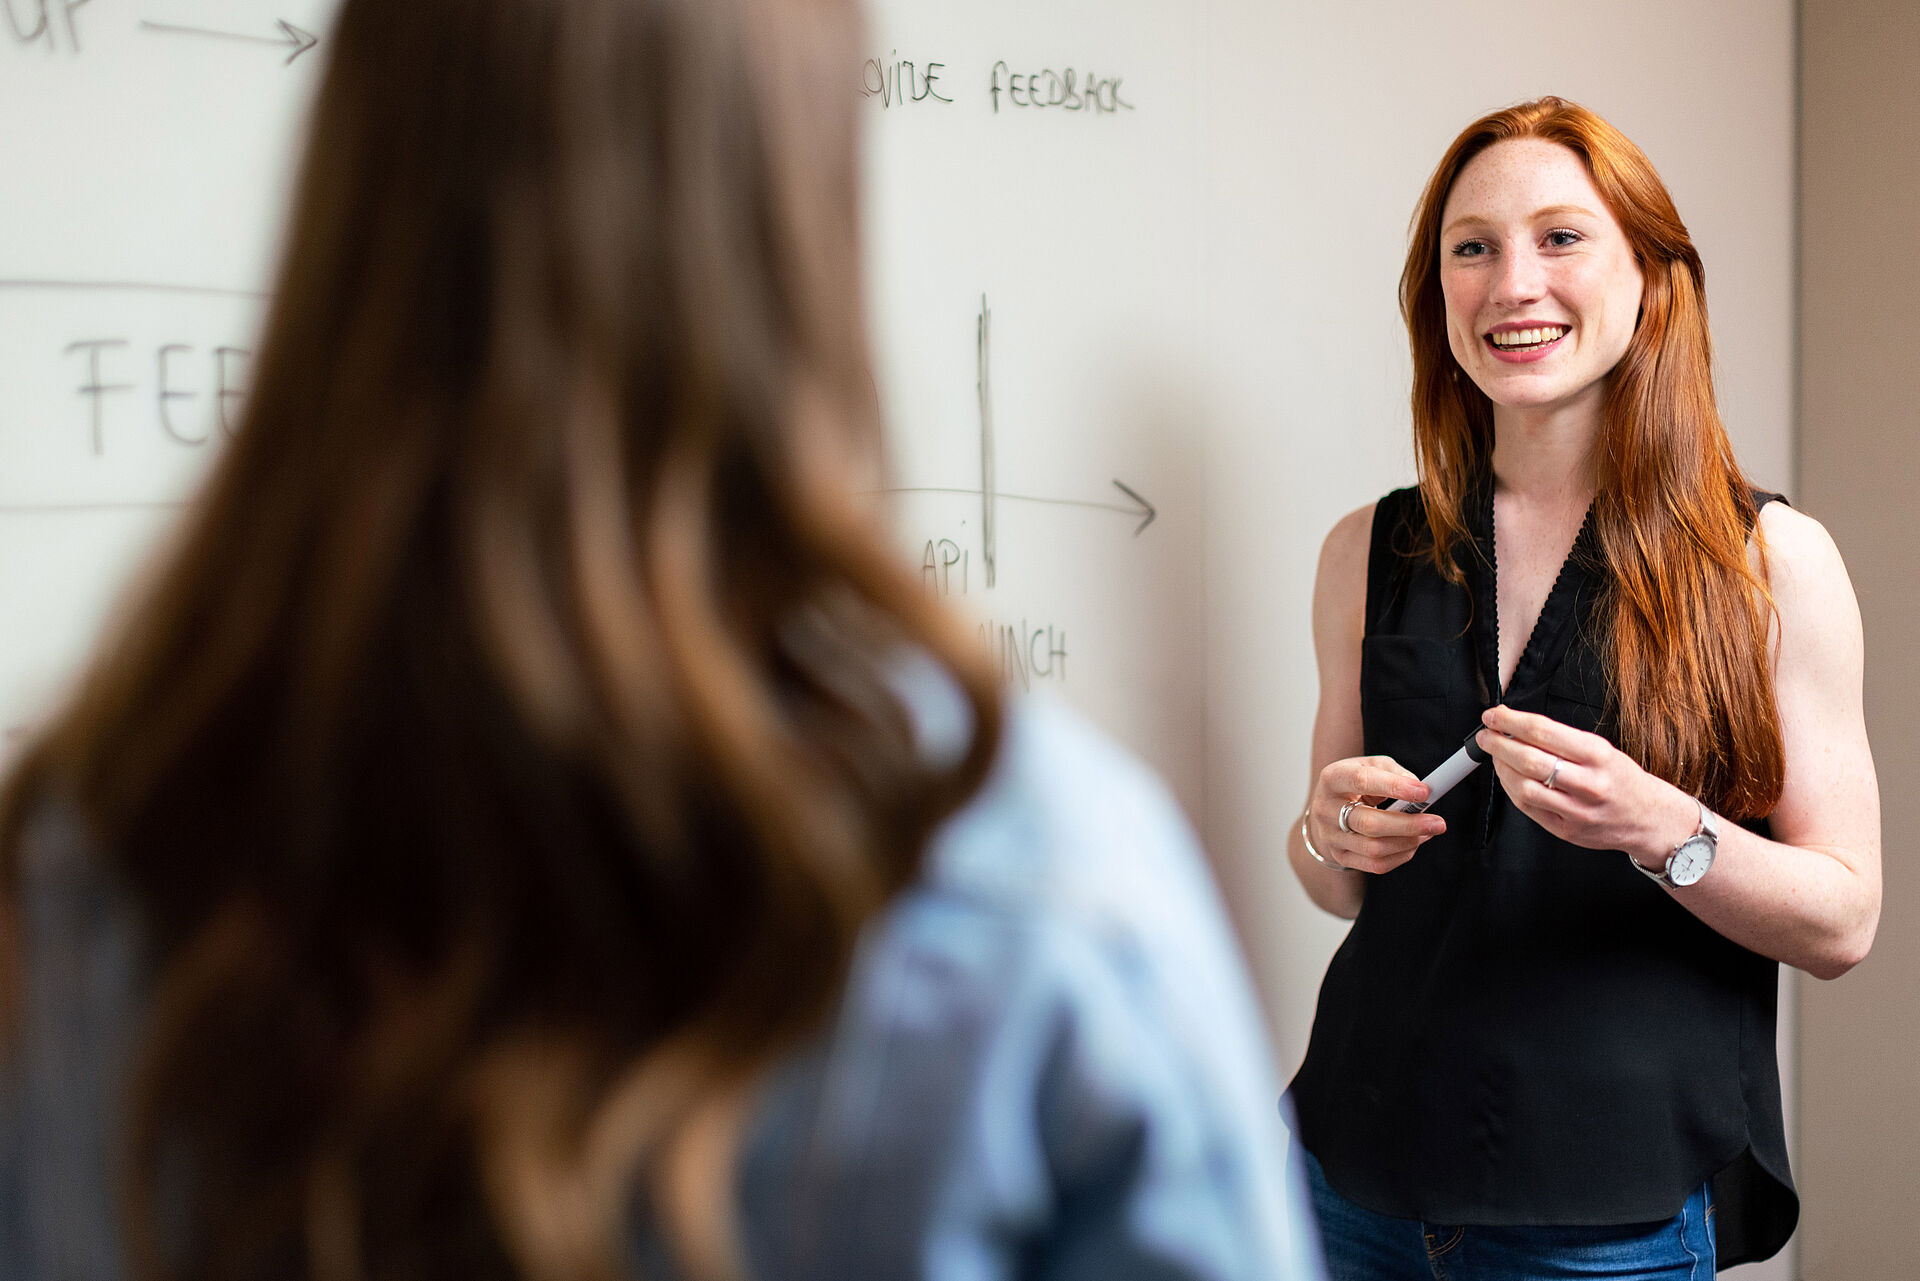 Eine junge Frau steht vor einem Whiteboard und erklärt einer anderen Frau eine Formel.